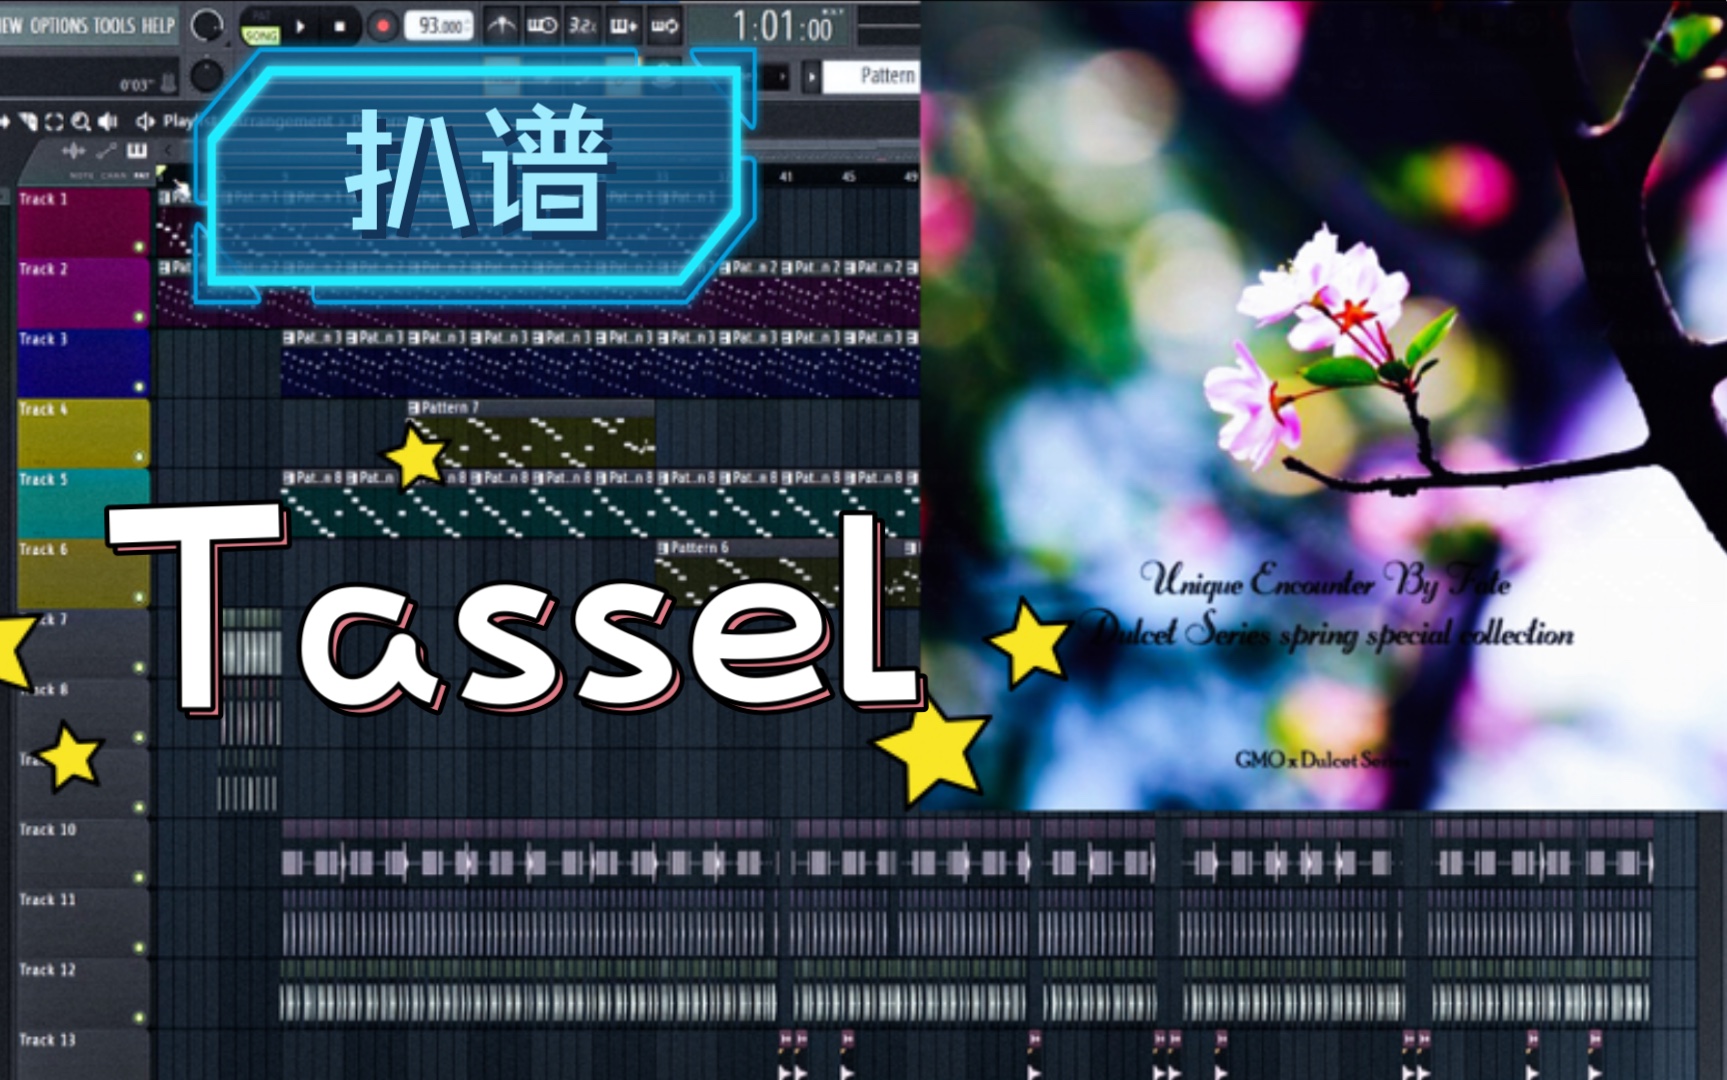 tassel音乐背景图片